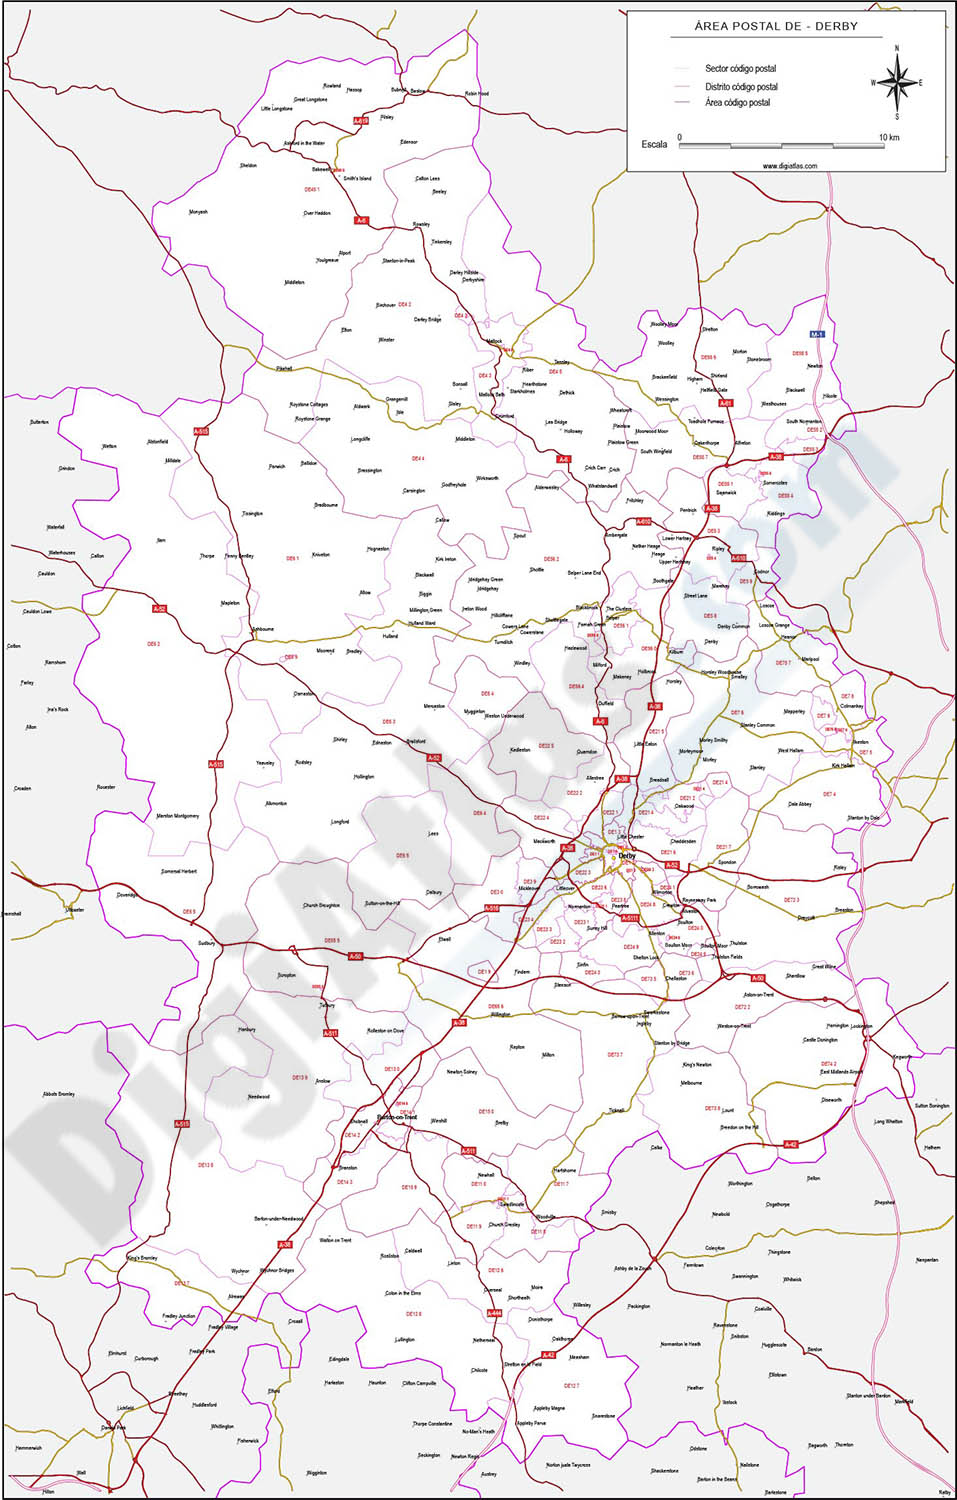 Derby - mapa de códigos postales y carreteras